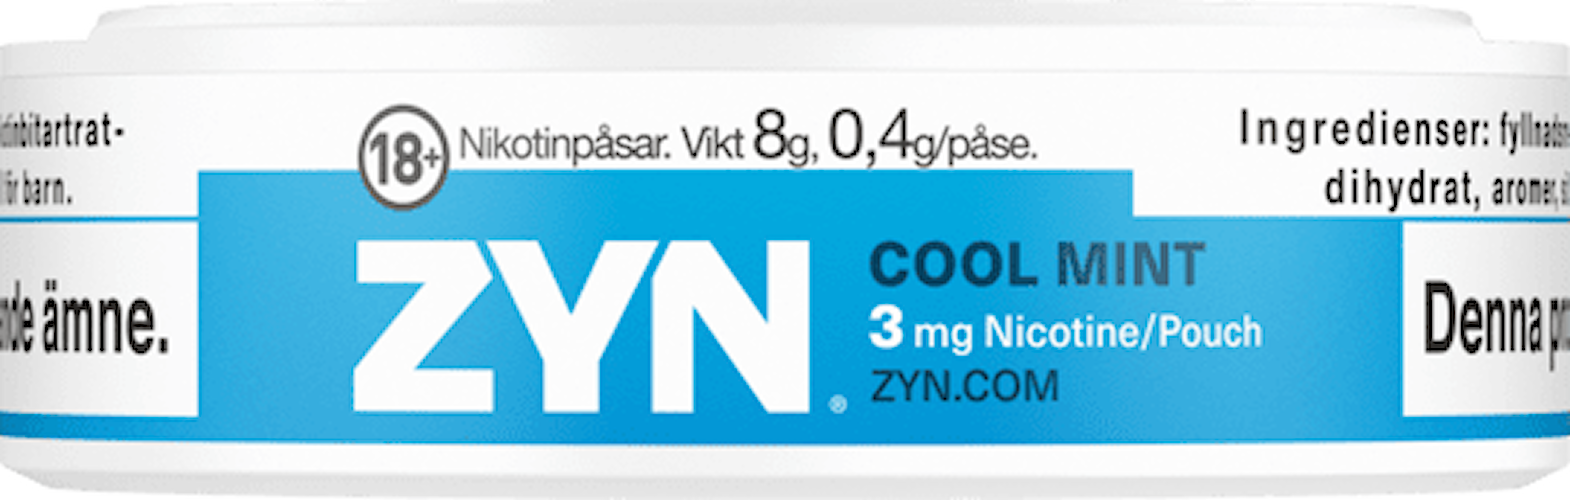 ZYN® Mini Dry Cool Mint 3mg